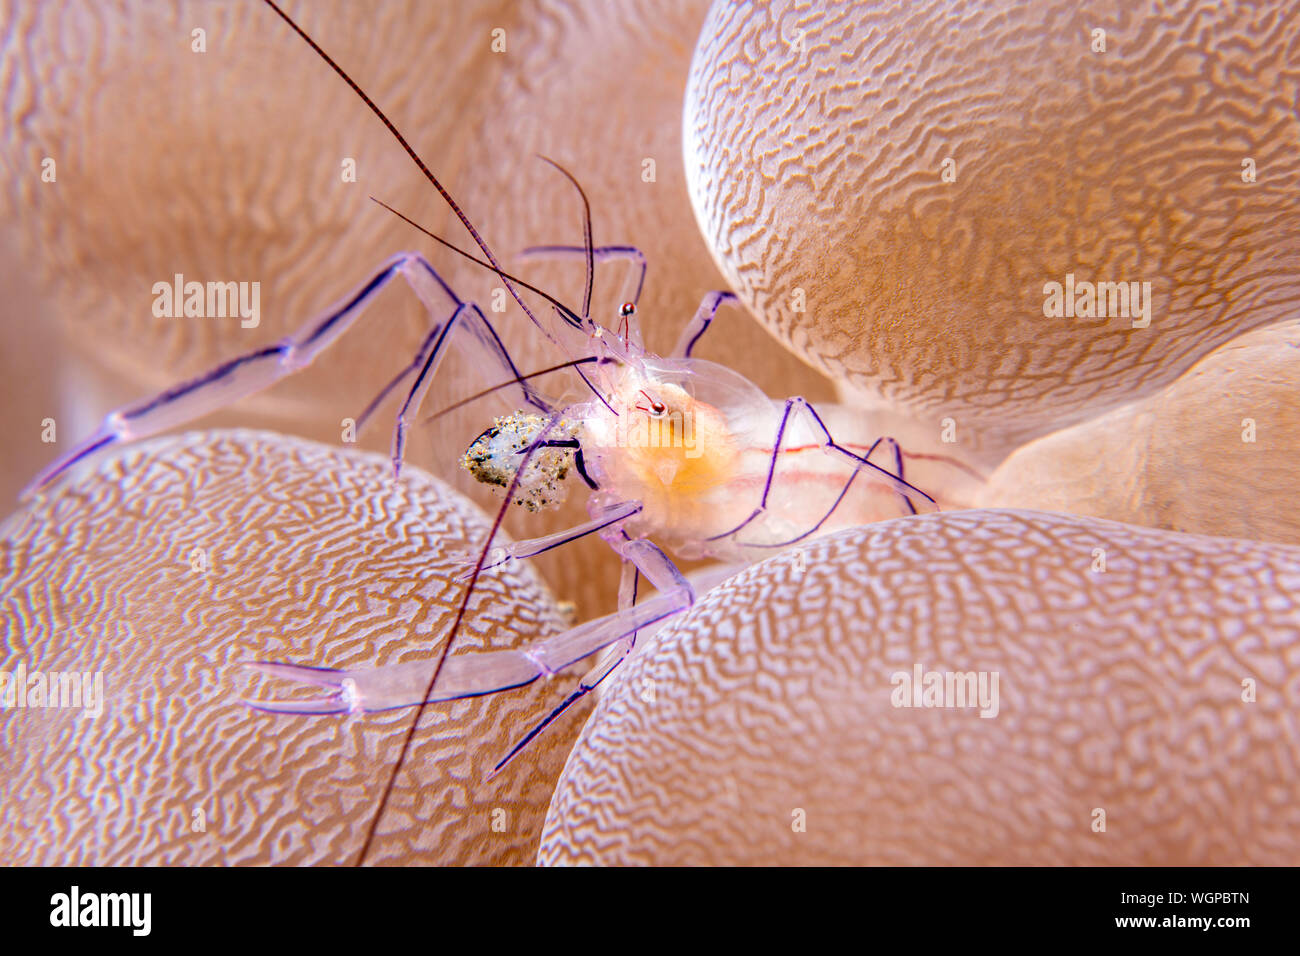 Transluzente Anemone shrimp Leben innerhalb der Tentakeln und Lampen der Host für Schutz und frisst die Reste, die die Anemone Fänge. Stockfoto